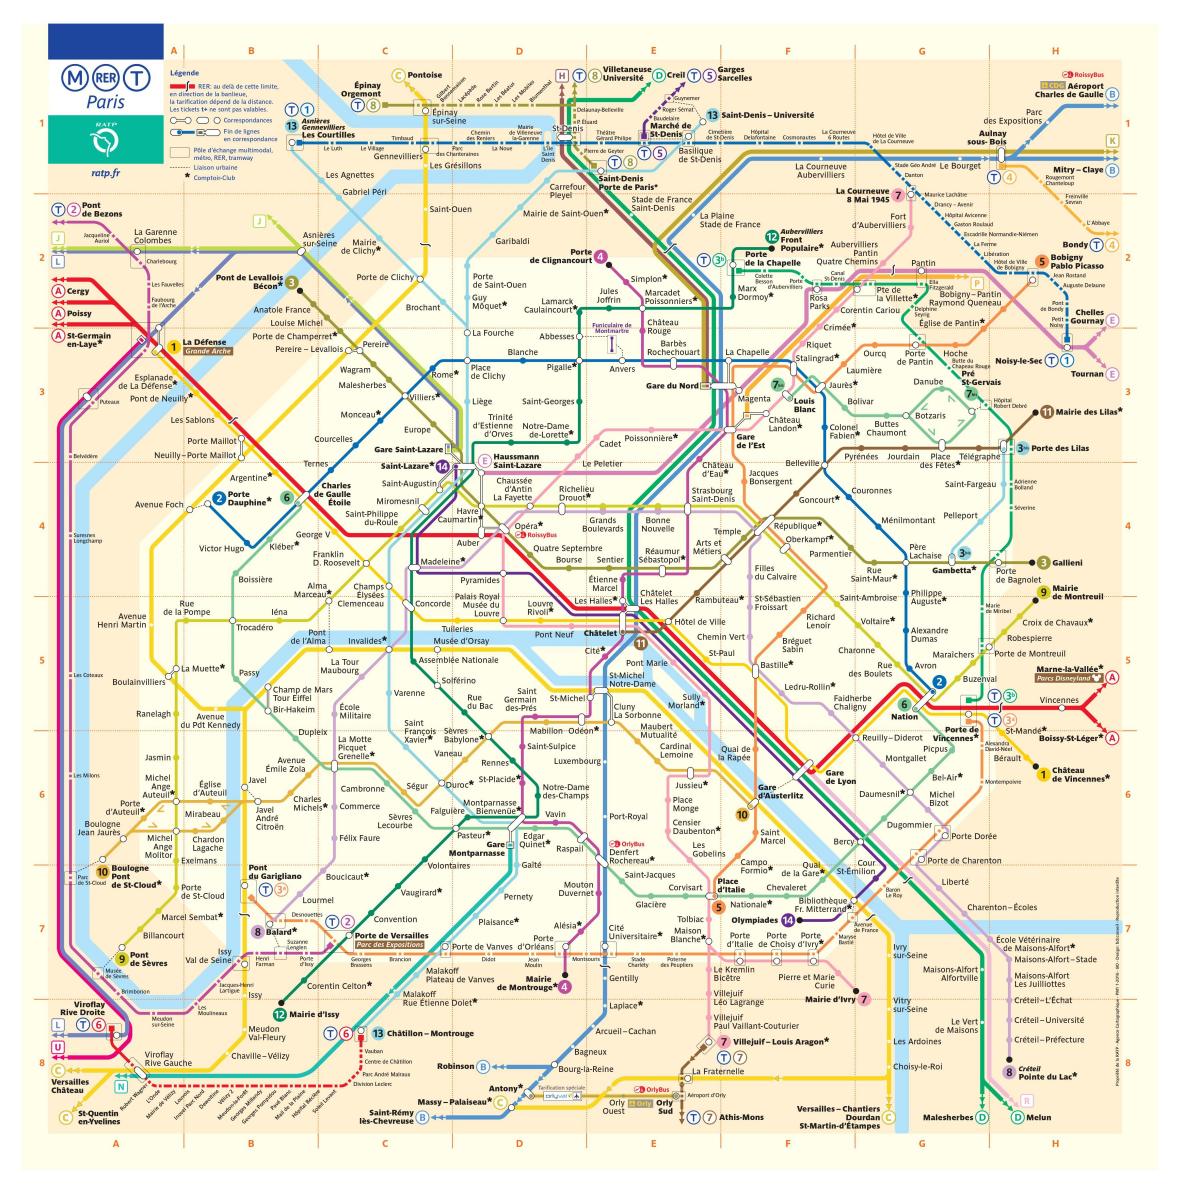 Térkép a Párizsi metró